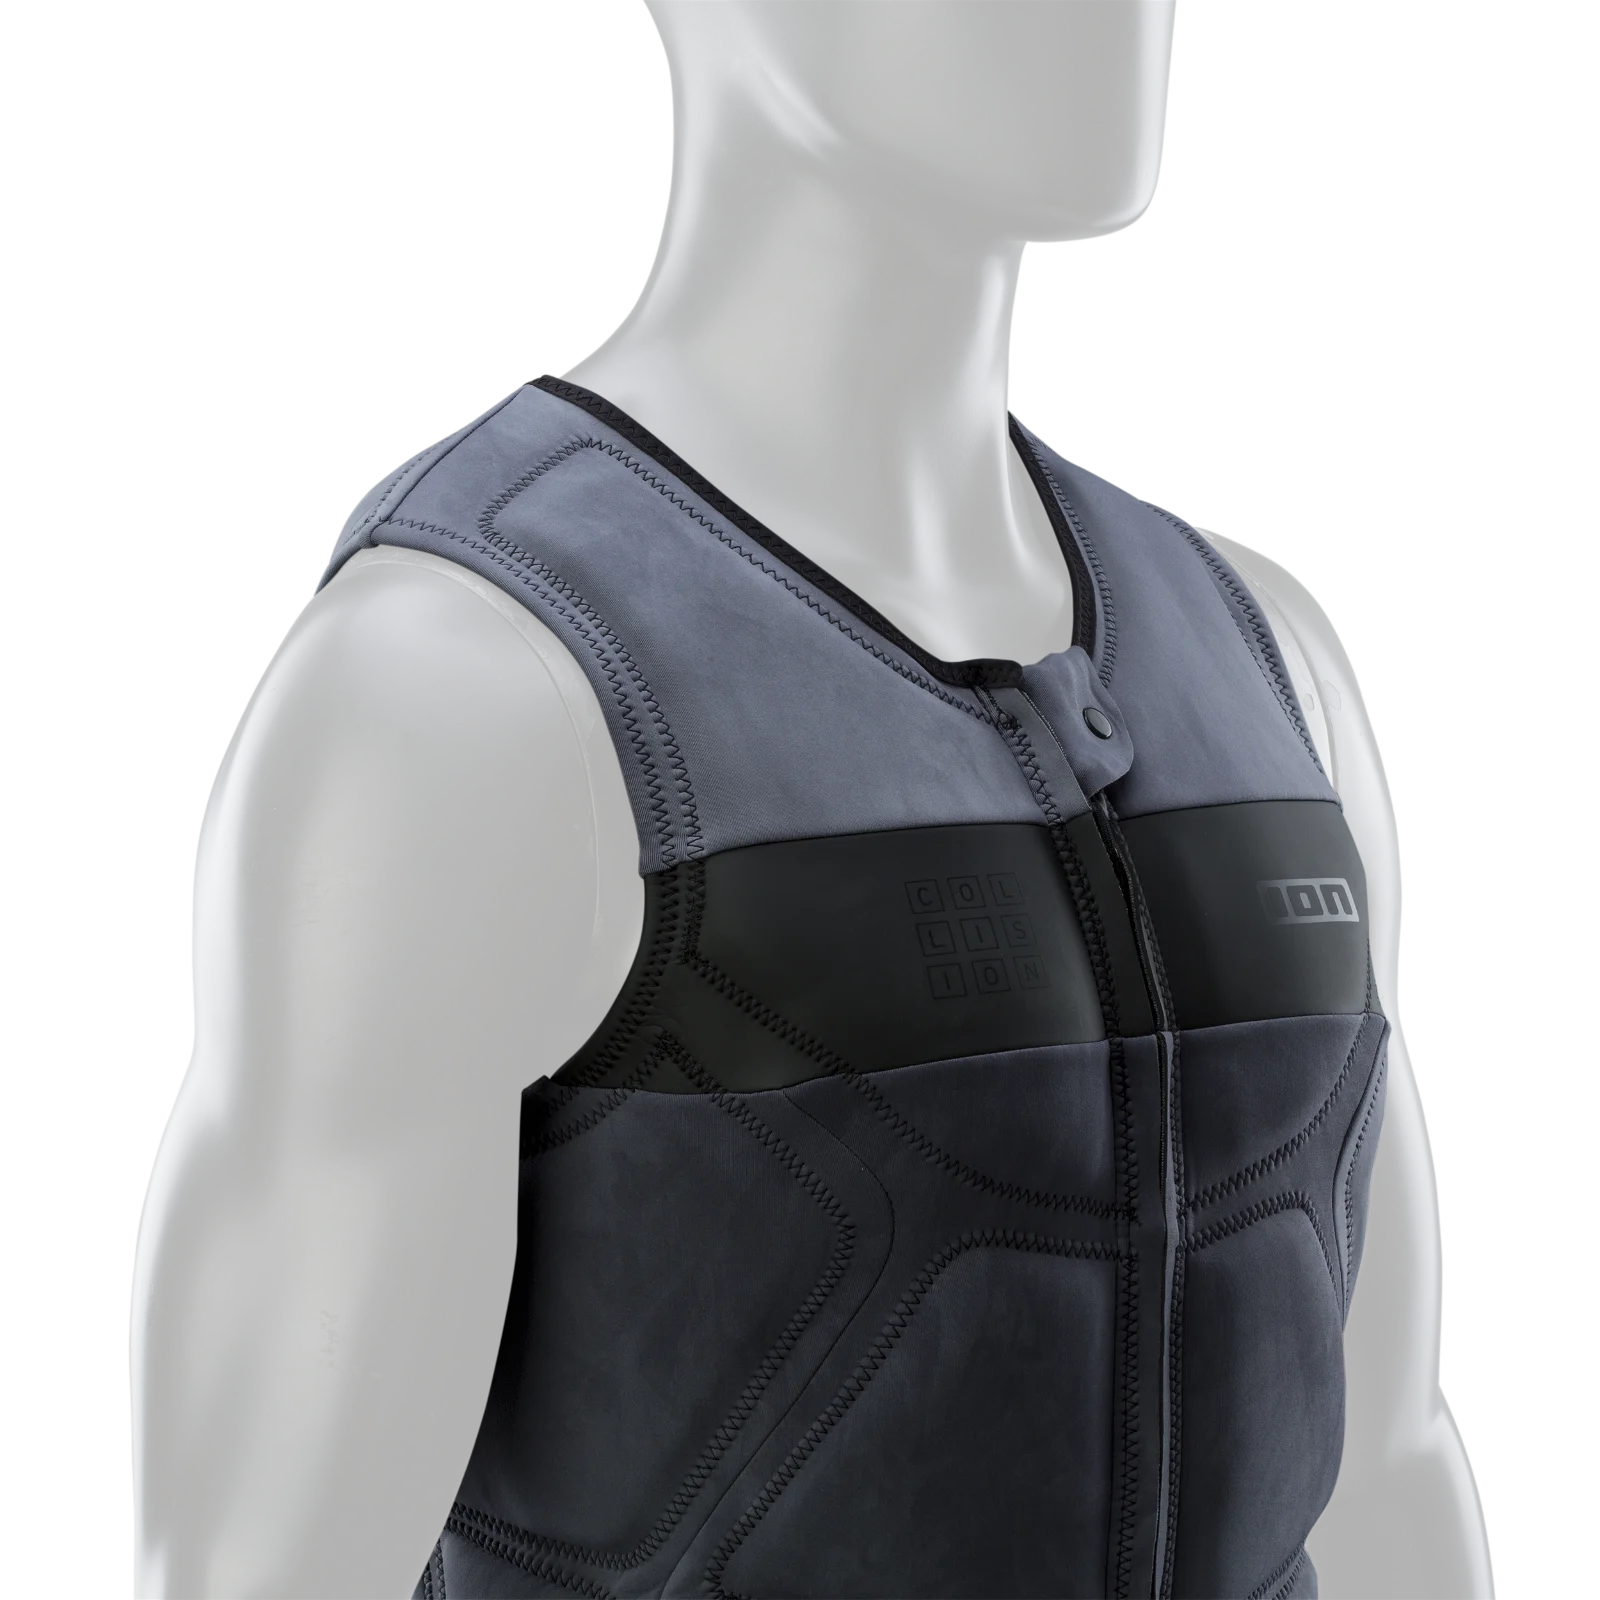 Жилет водный Ion Collision Vest Select Tiedye Ltd Grey